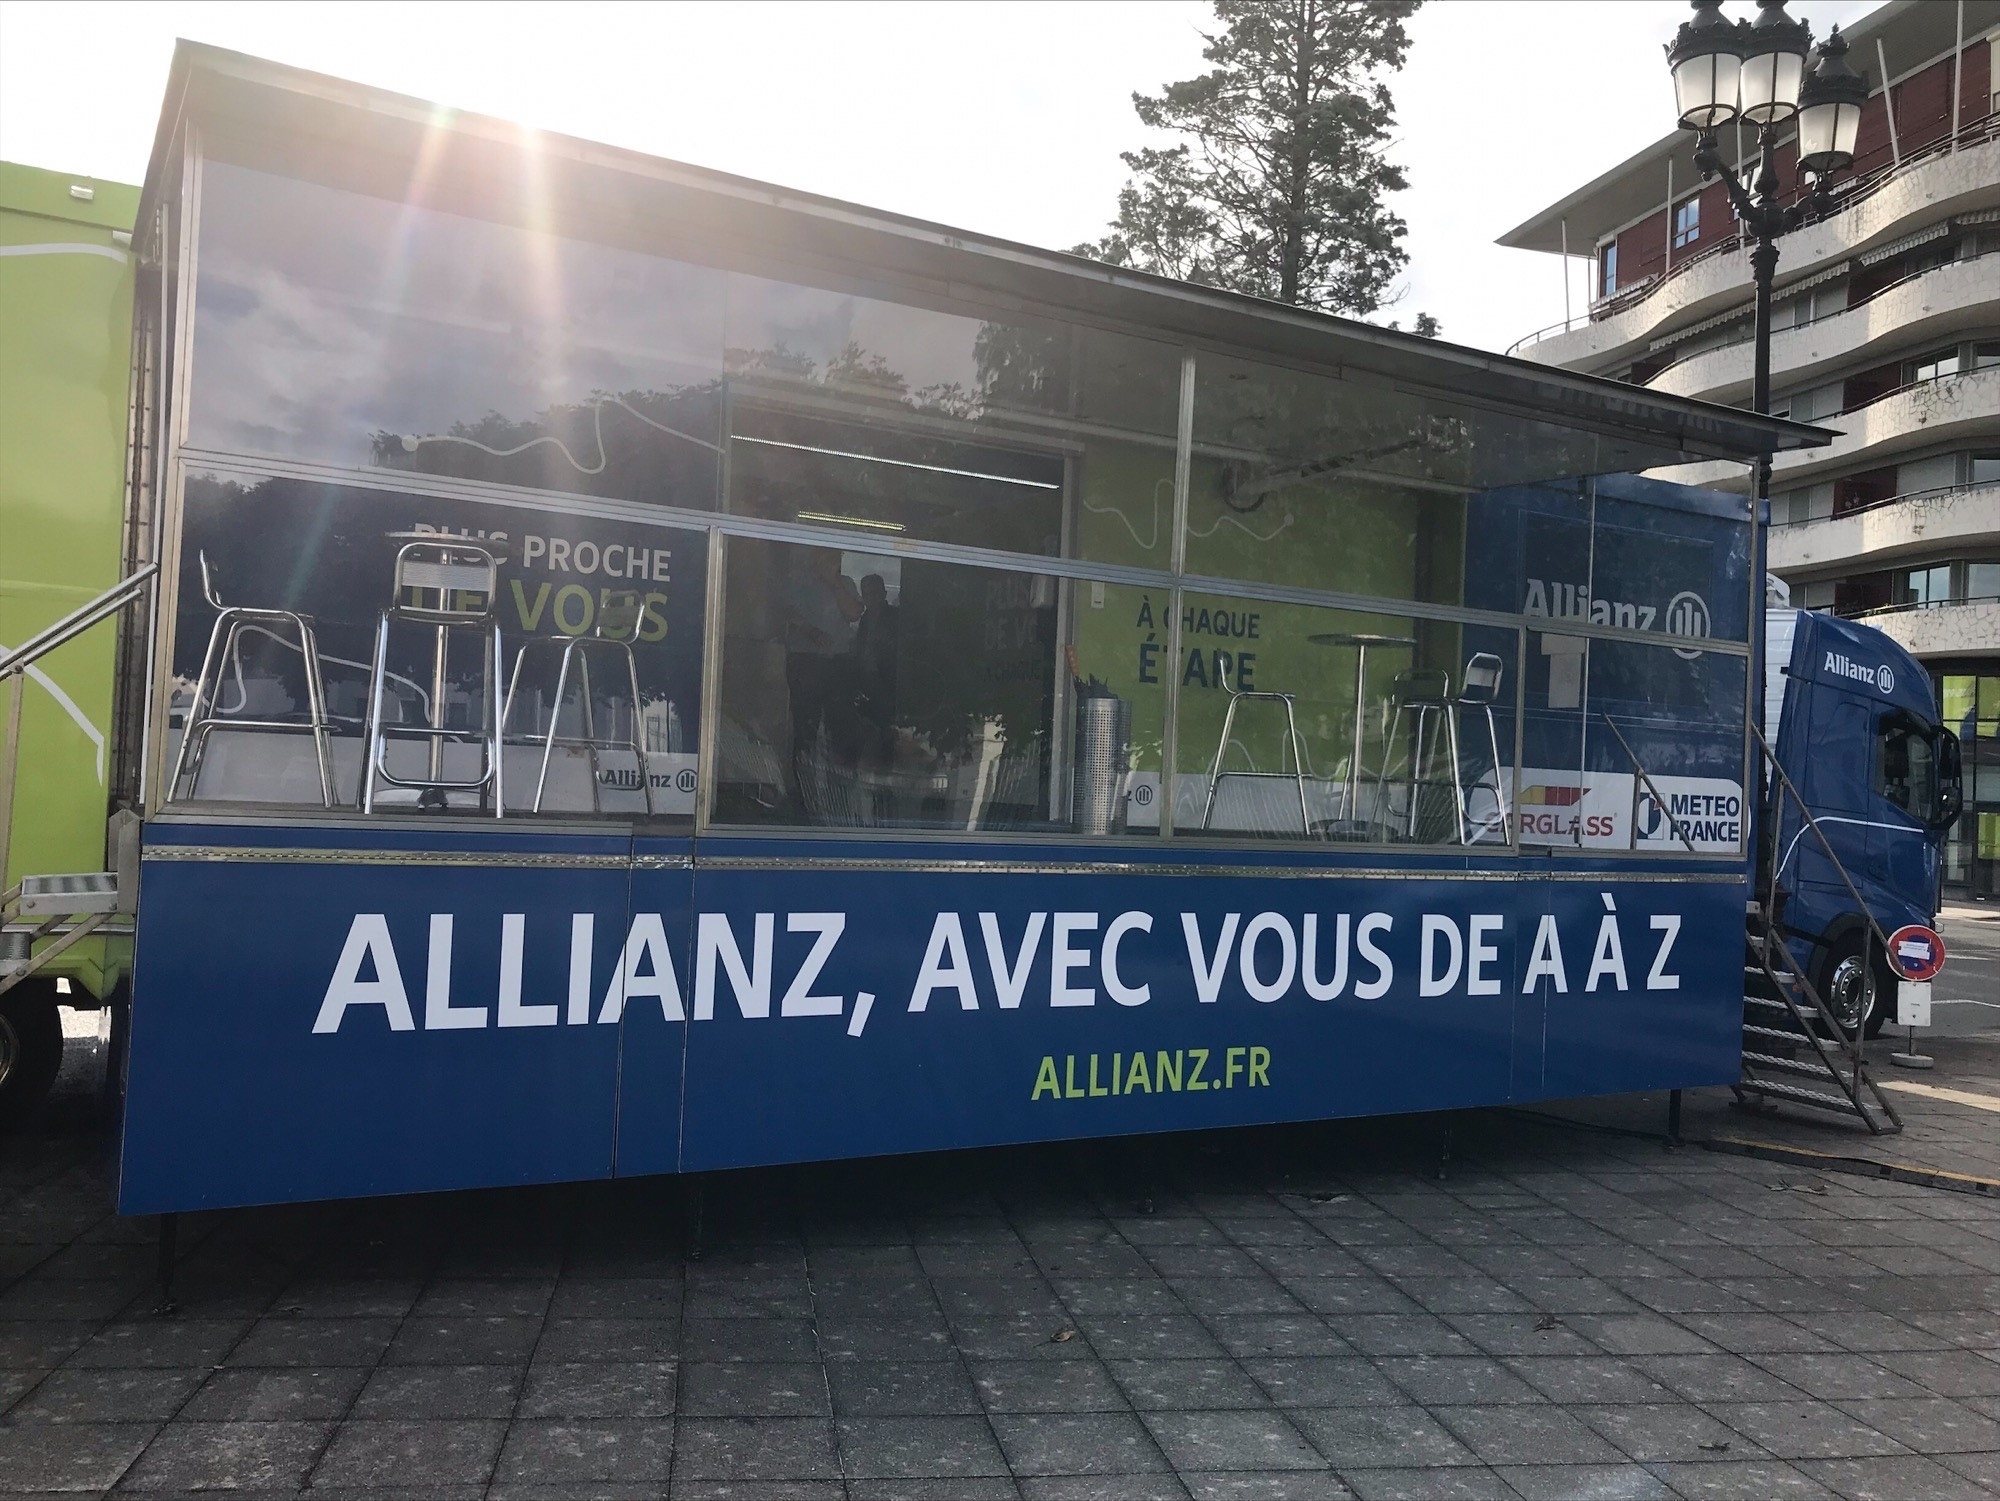 Suite aux violents orages du week-end, Allianz France dépêche son Unité Mobile d'Intervention à Vichy pour accompagner les sinistrés